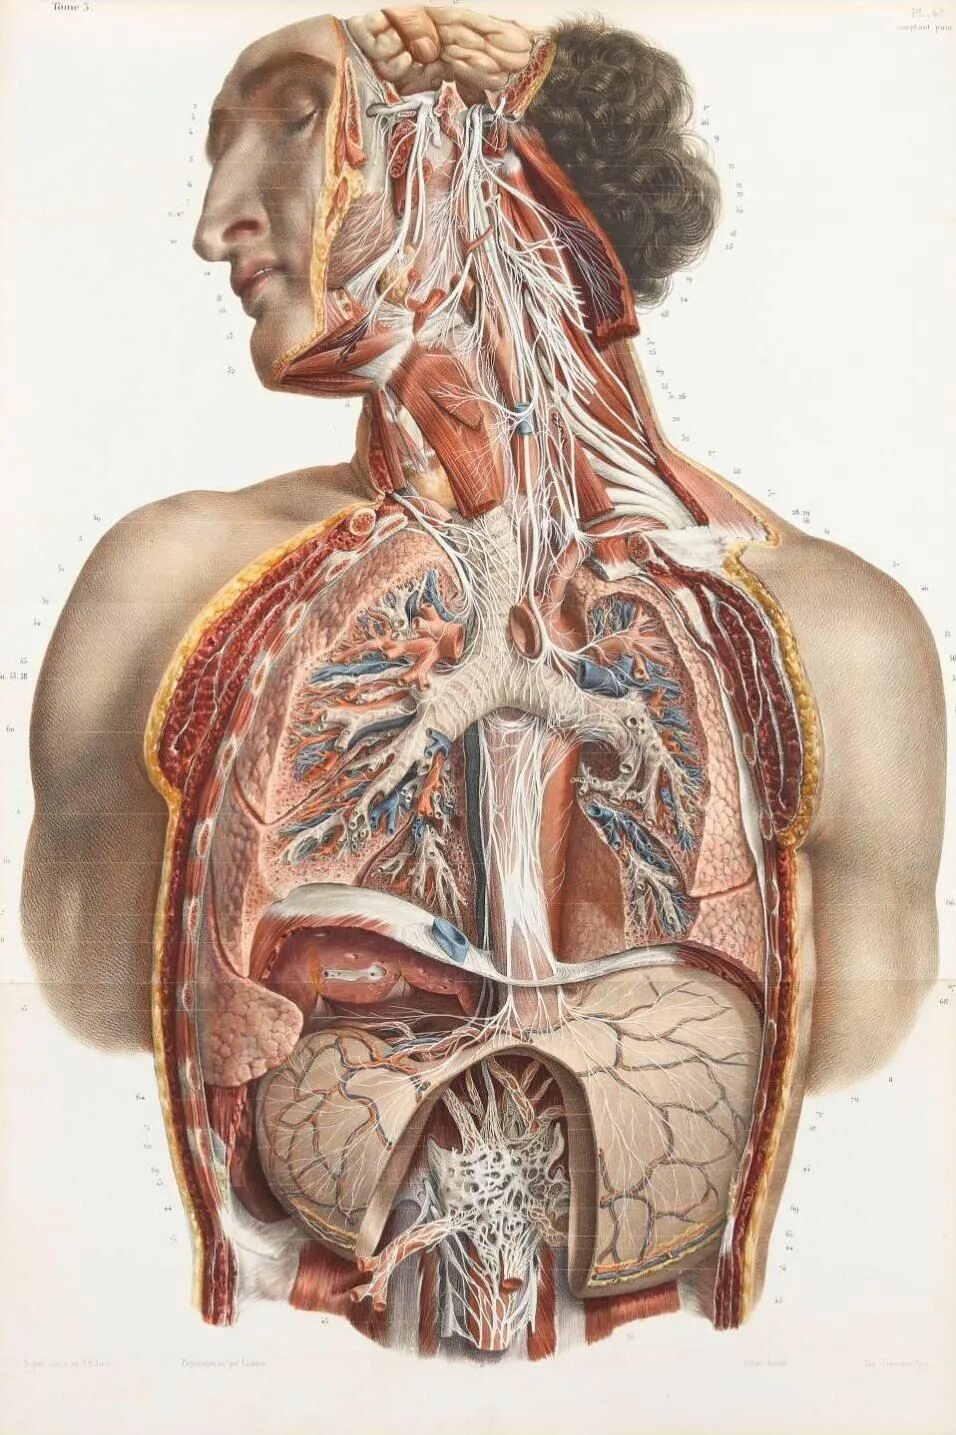 Страх органов человека. Анатомия человека. Человеческие органы в разрезе.